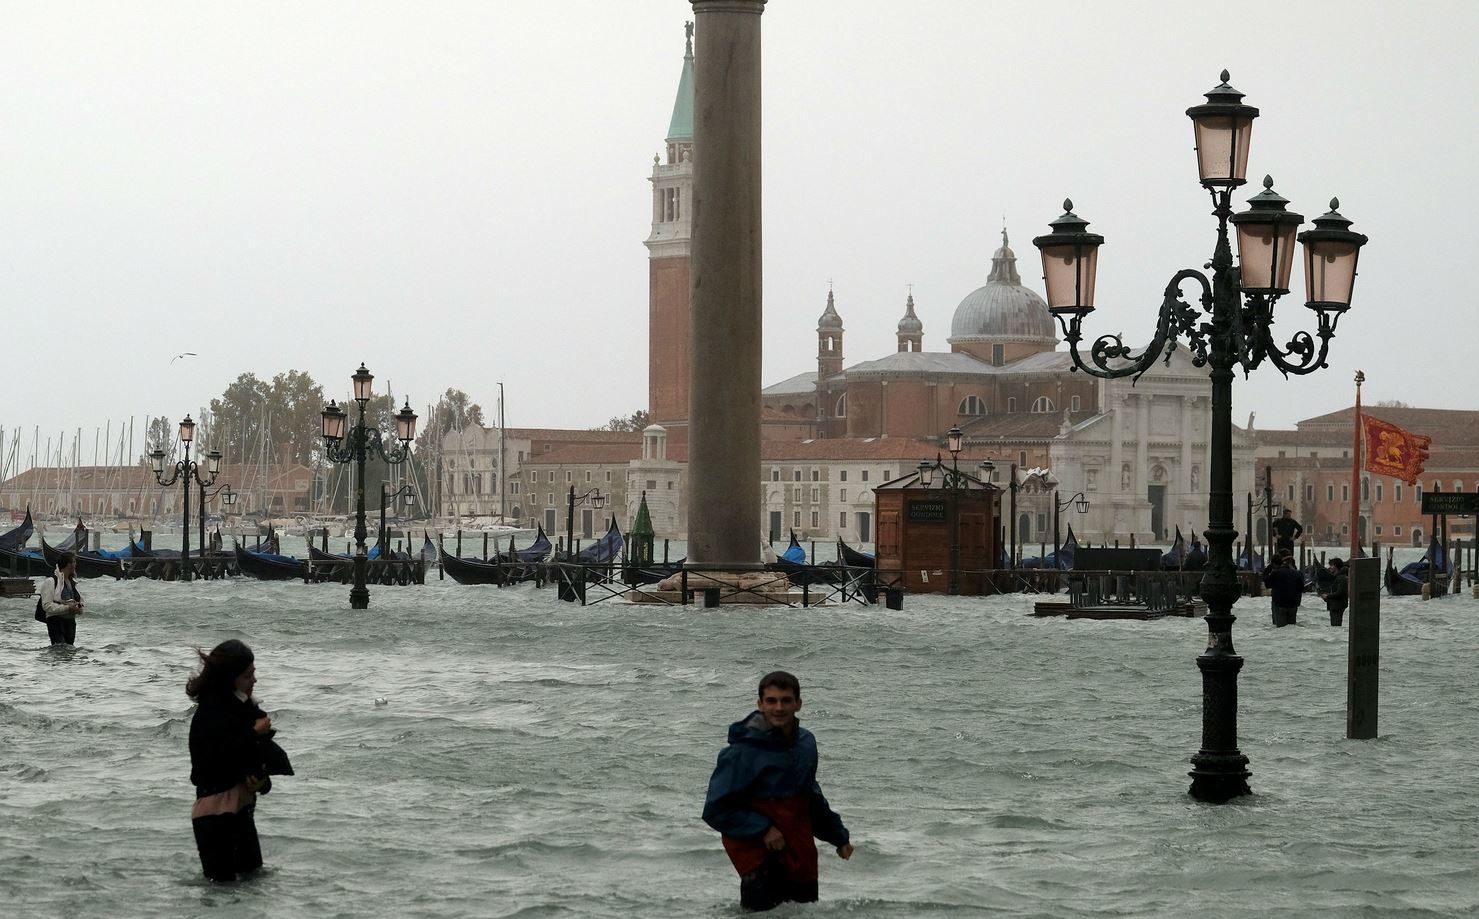 La gente camina en la inundada Plaza de San Marcos durante un período de marea estacional en Venecia, Italia, 29 de octubre de 2018.